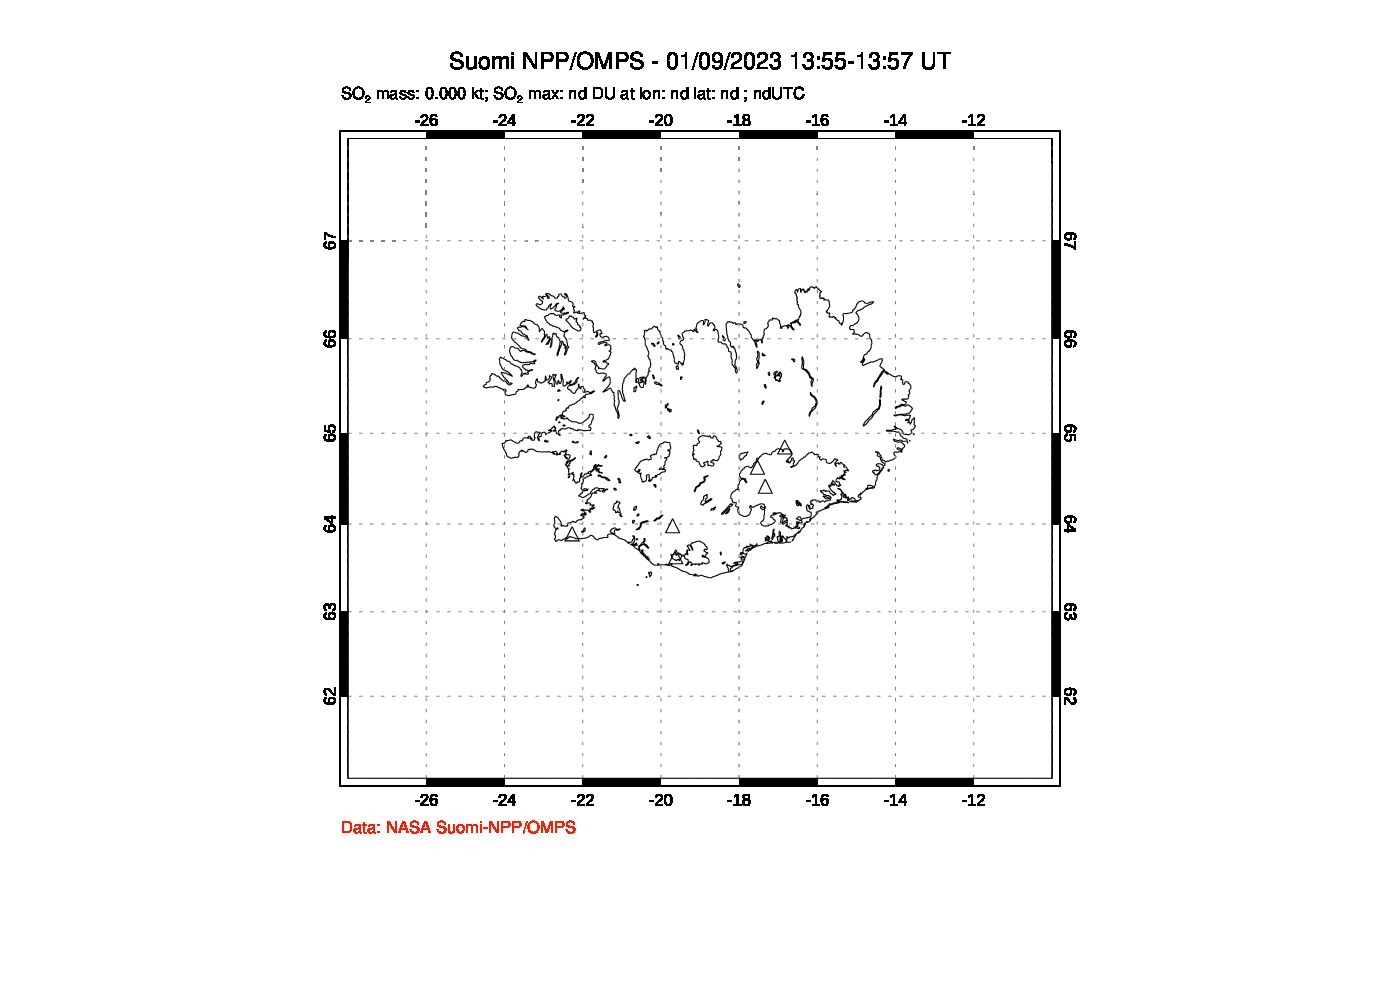 A sulfur dioxide image over Iceland on Jan 09, 2023.